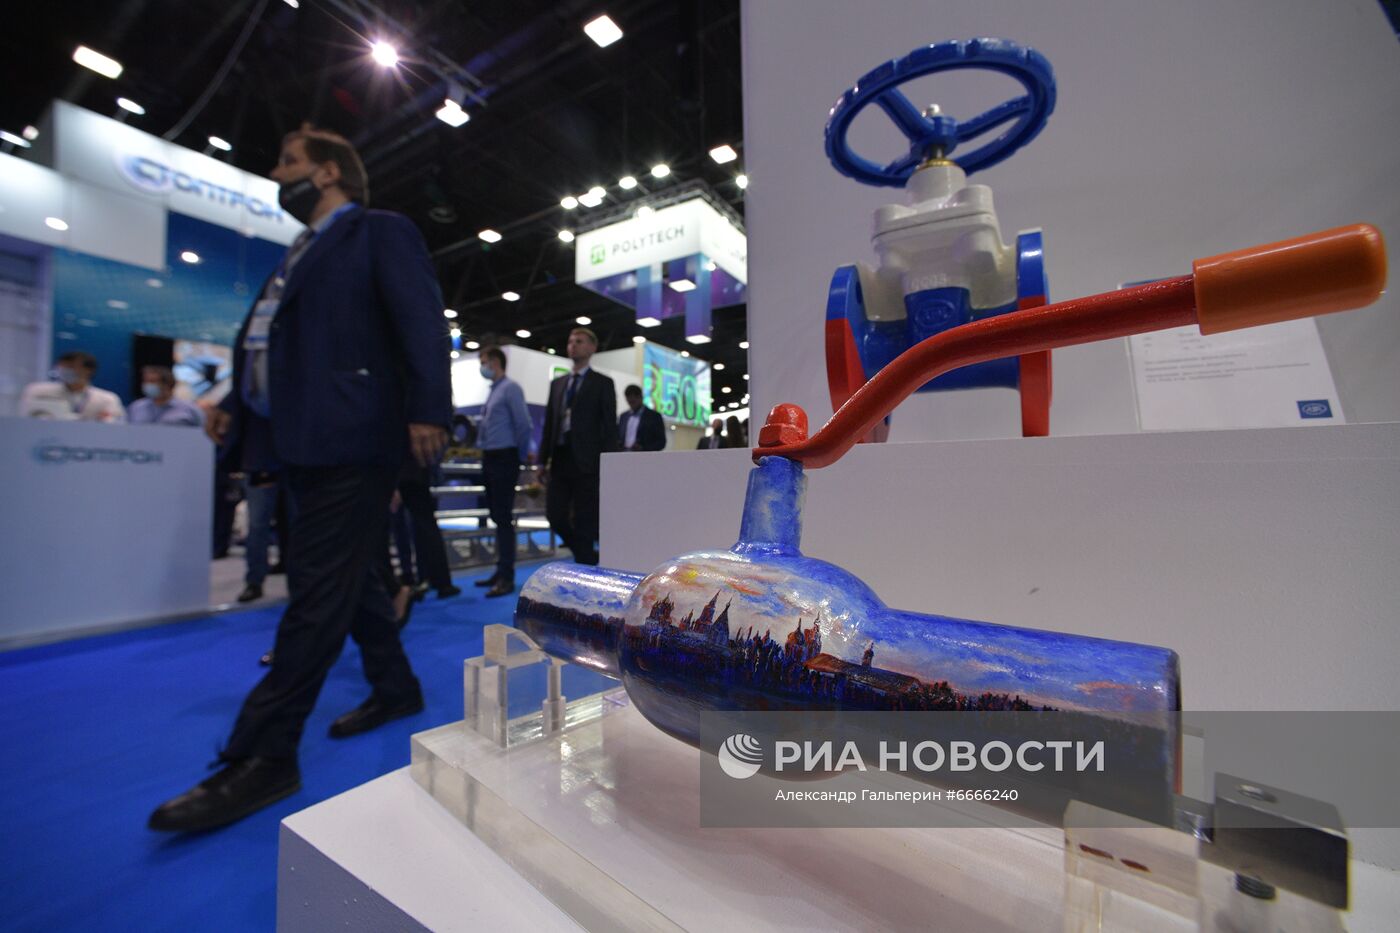 Петербургский международный газовый форум - 2021